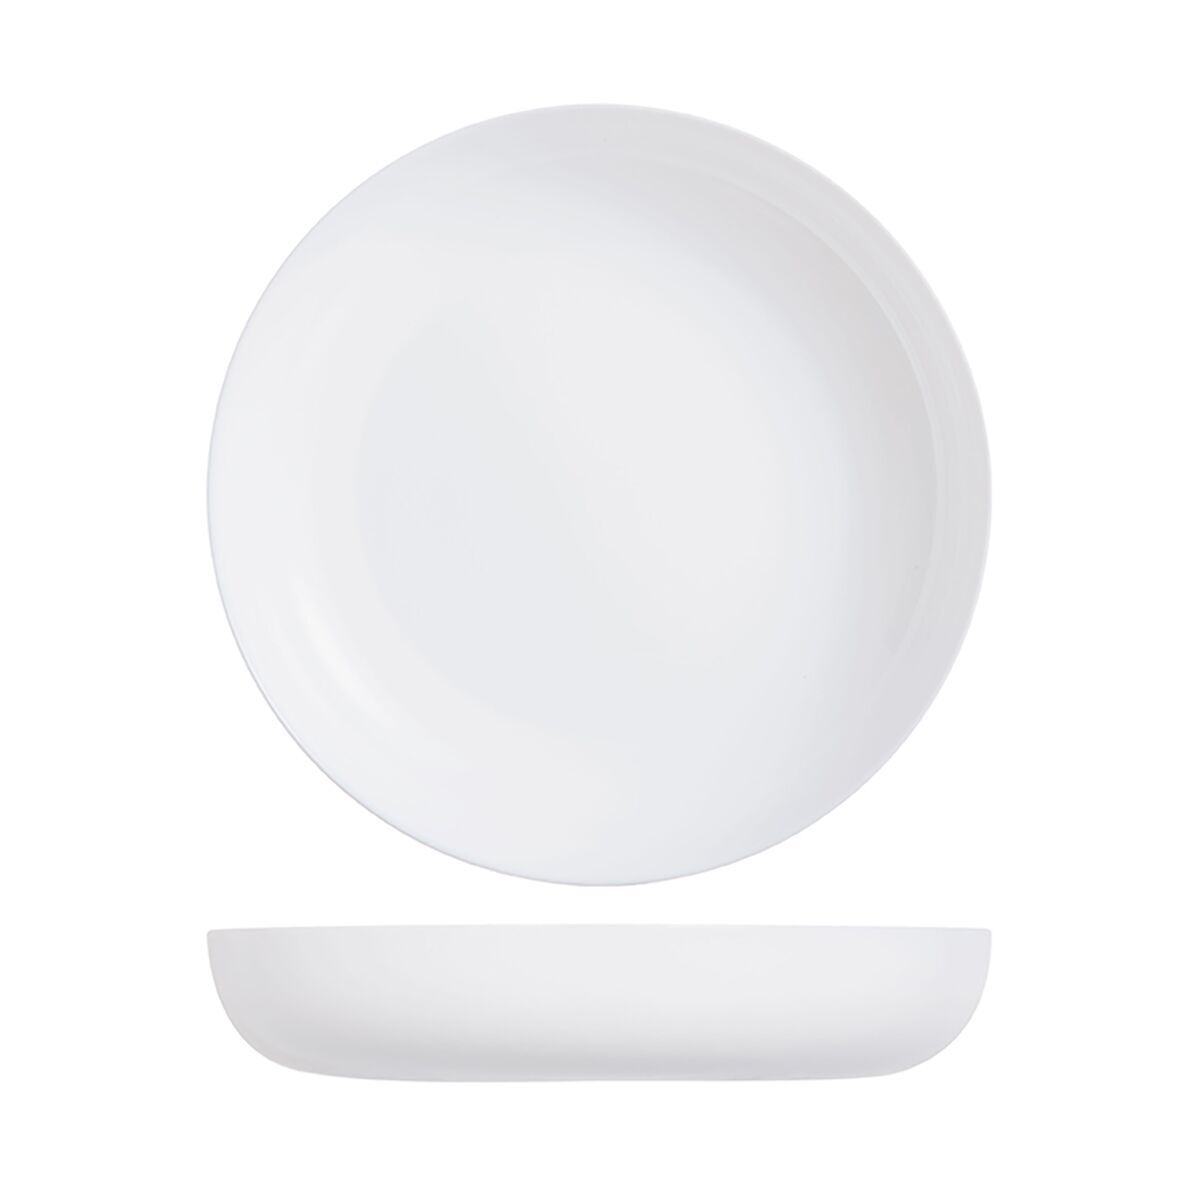 Тарелка глубокая с бортом Luminarc "Эволюшнс" 17 см, стеклокерамика, белый цвет, ARC, (/6/12)